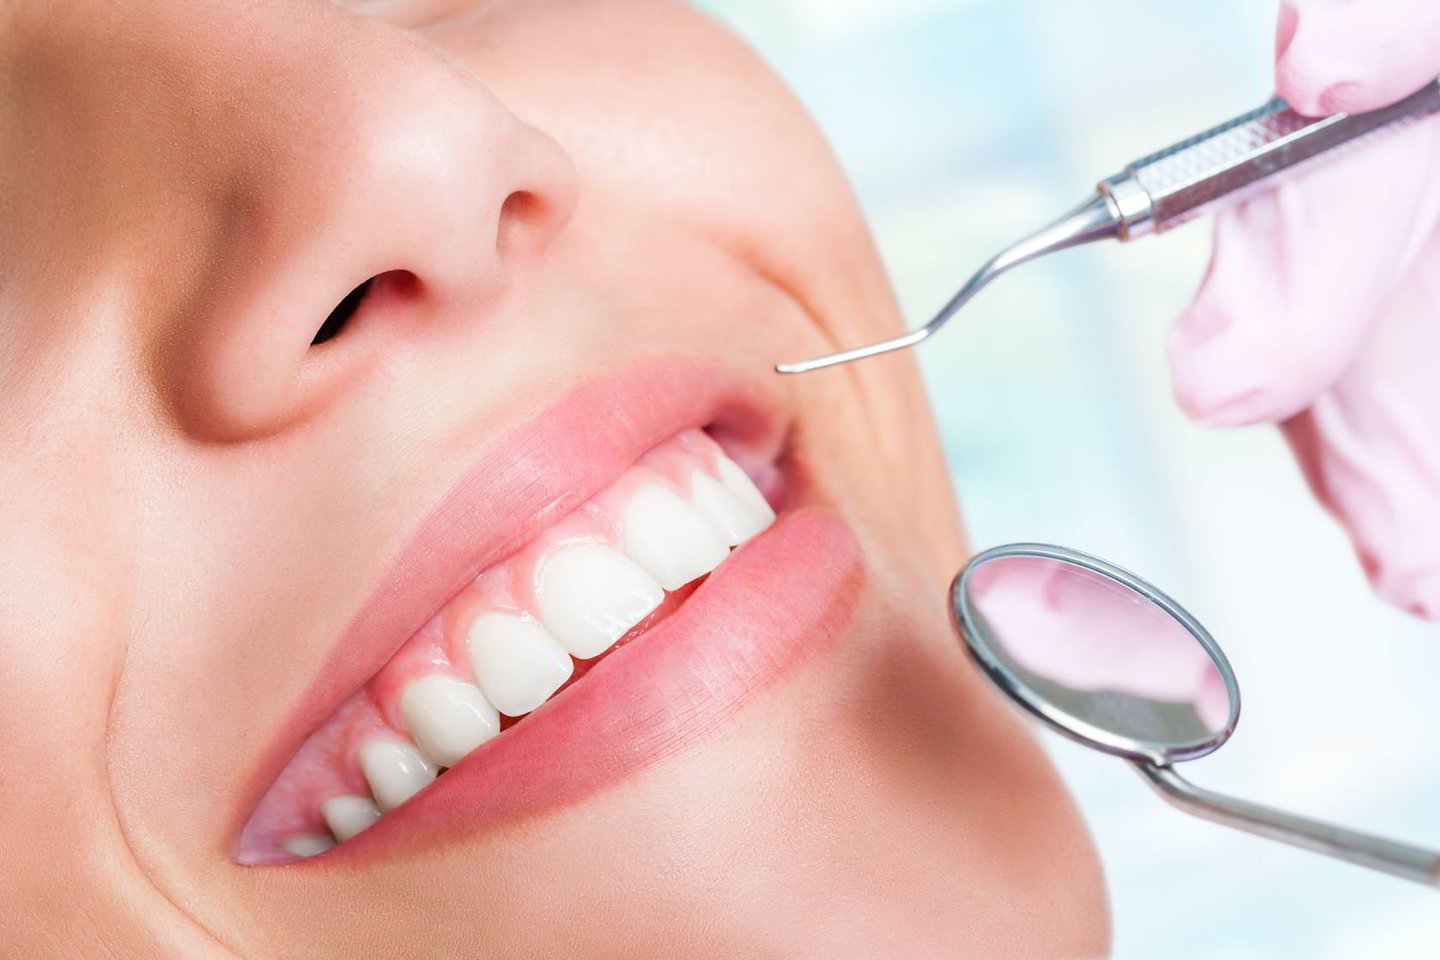  Milijonai vyrų ir moterų kompleksuoja dėl savo netobulų dantų, tad kalbėdamiesi ar juokdamiesi nevalingai burną prisidengia ranka.<br> 123rf.com nuotr.